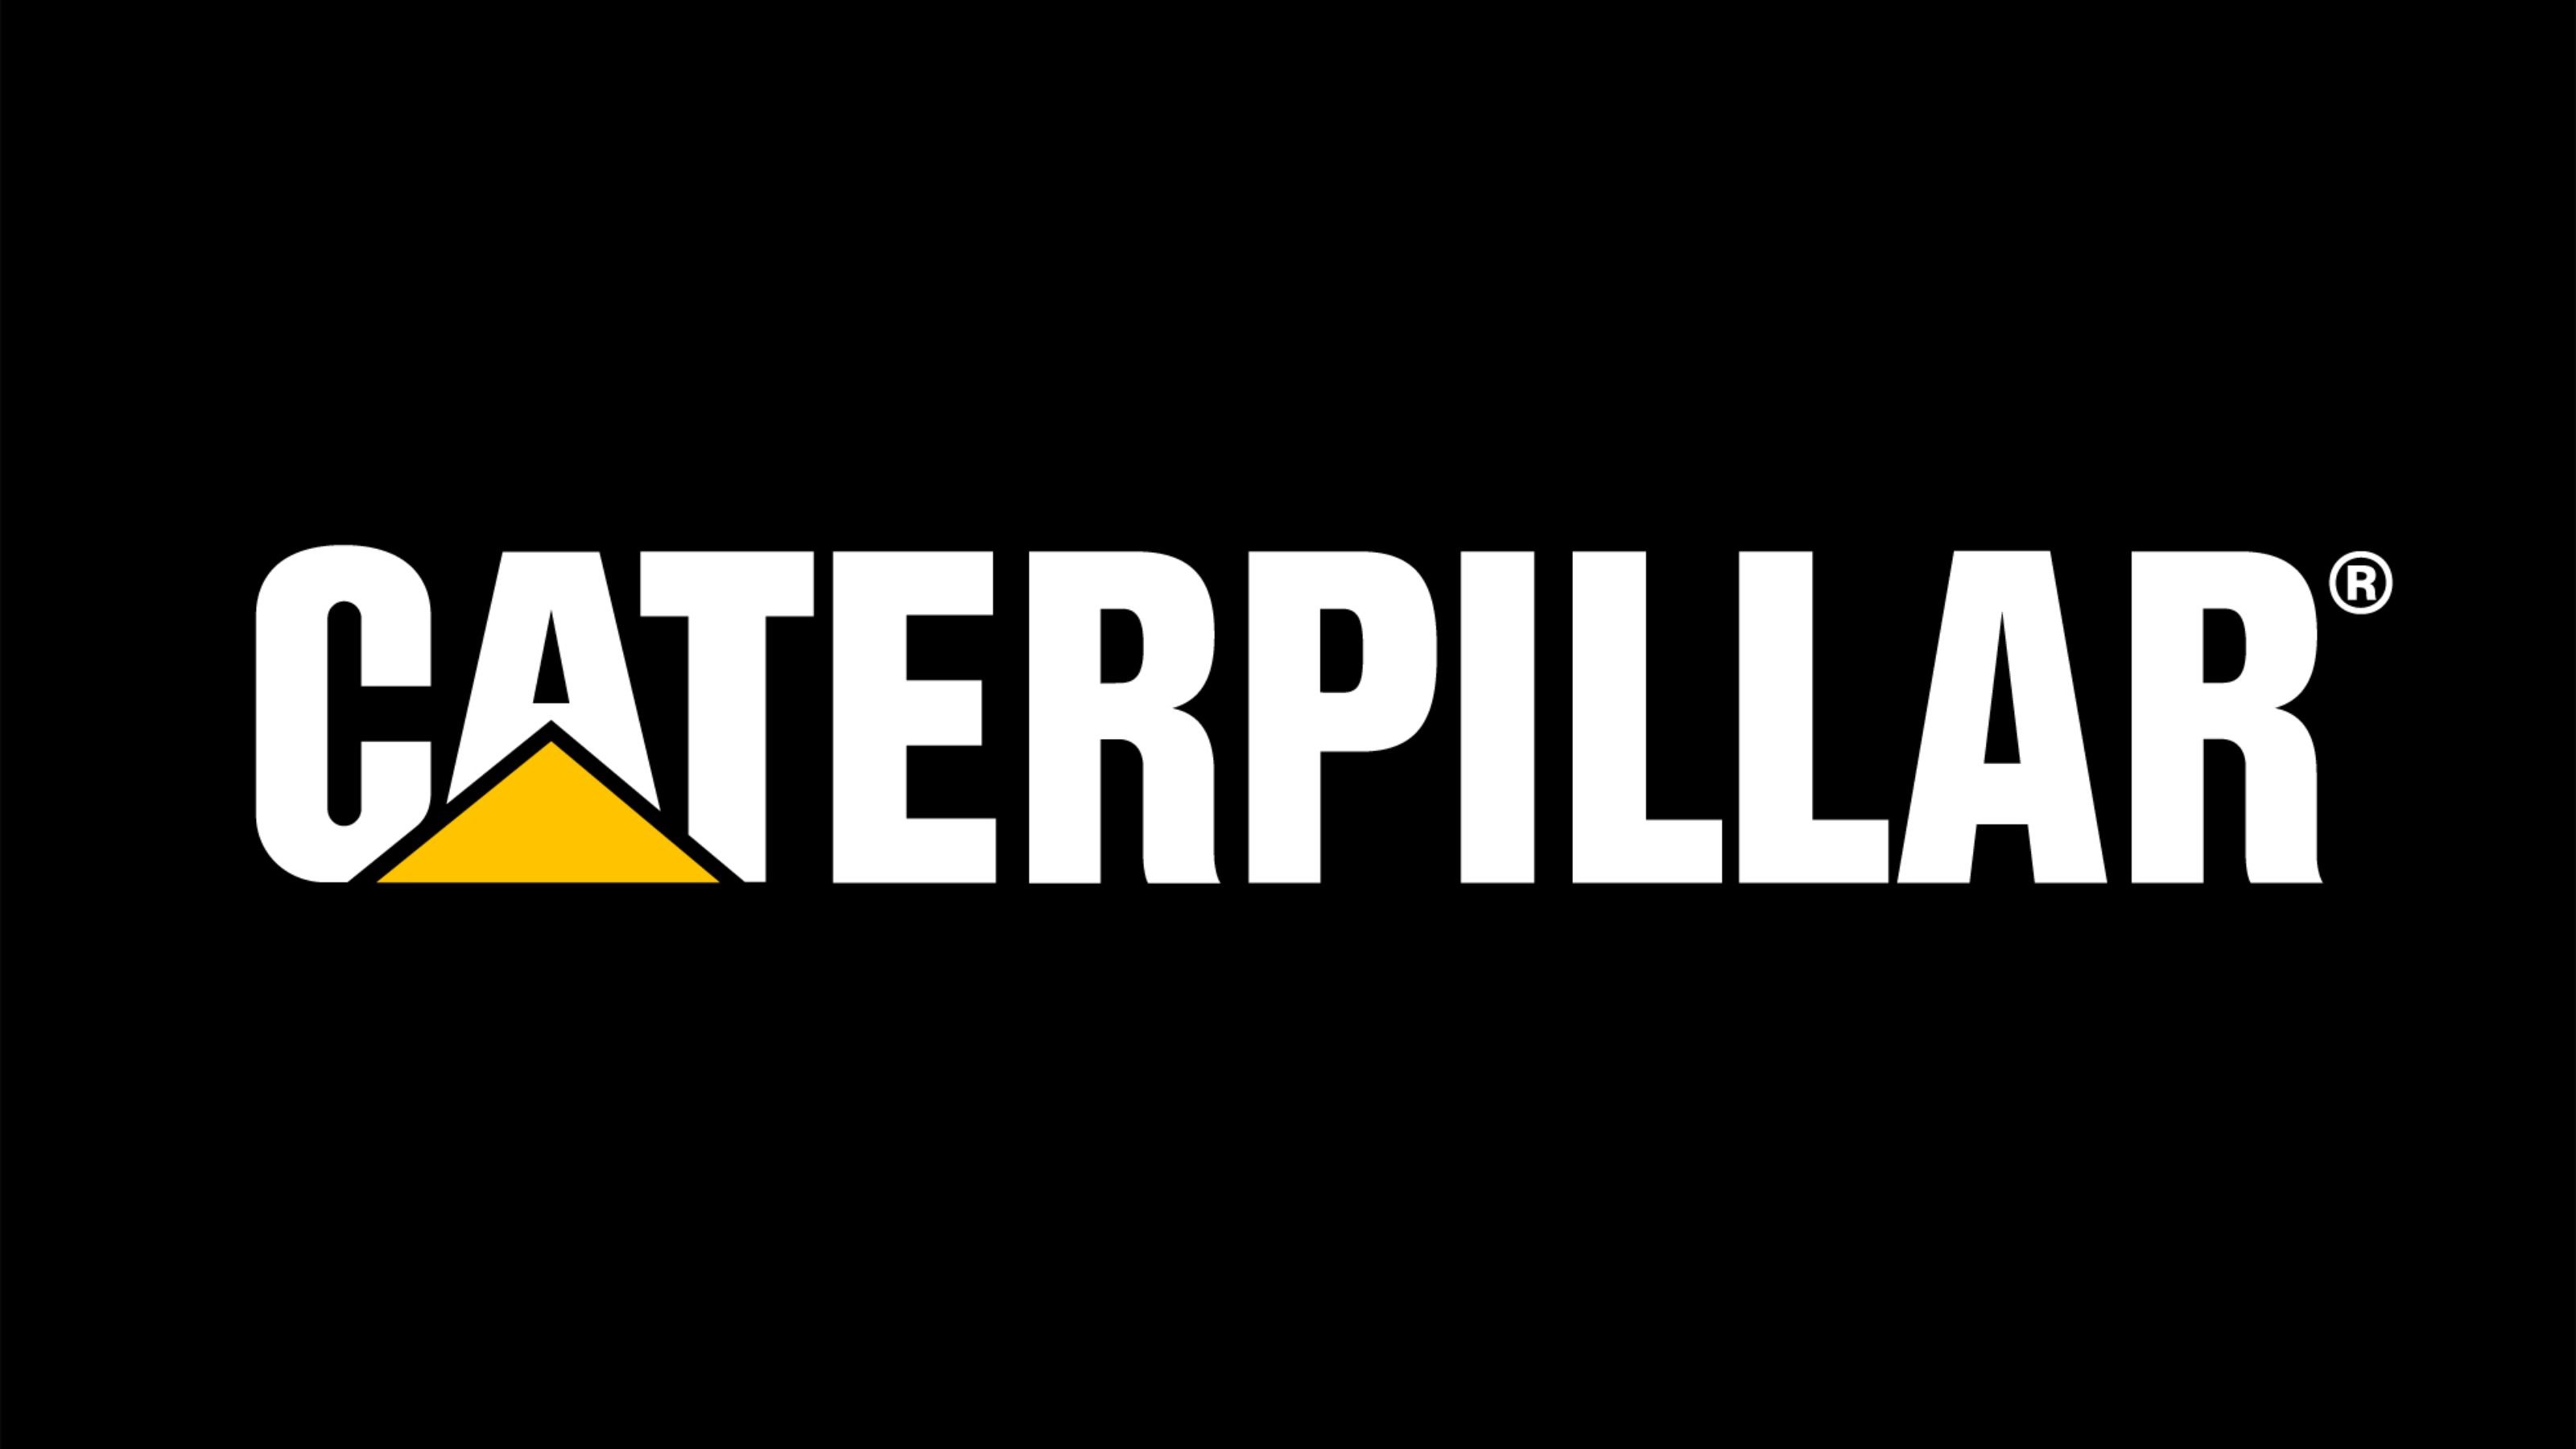 Caterpillar Logo Vector at GetDrawings Free download